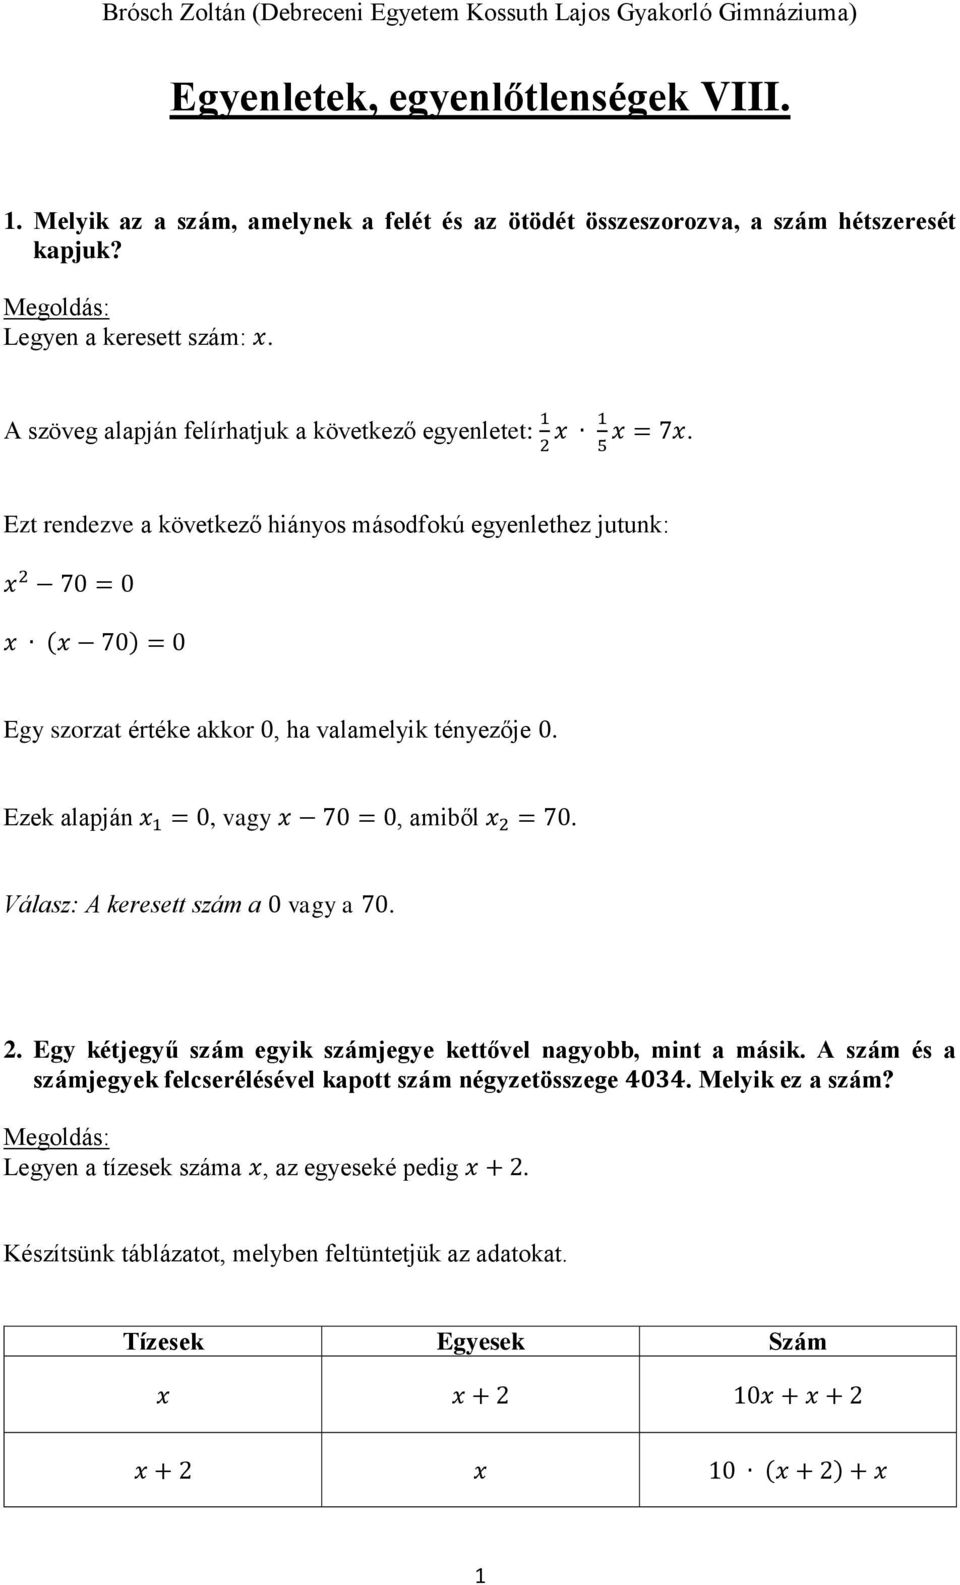 Egyenletek, egyenlőtlenségek VIII. - PDF Ingyenes letöltés